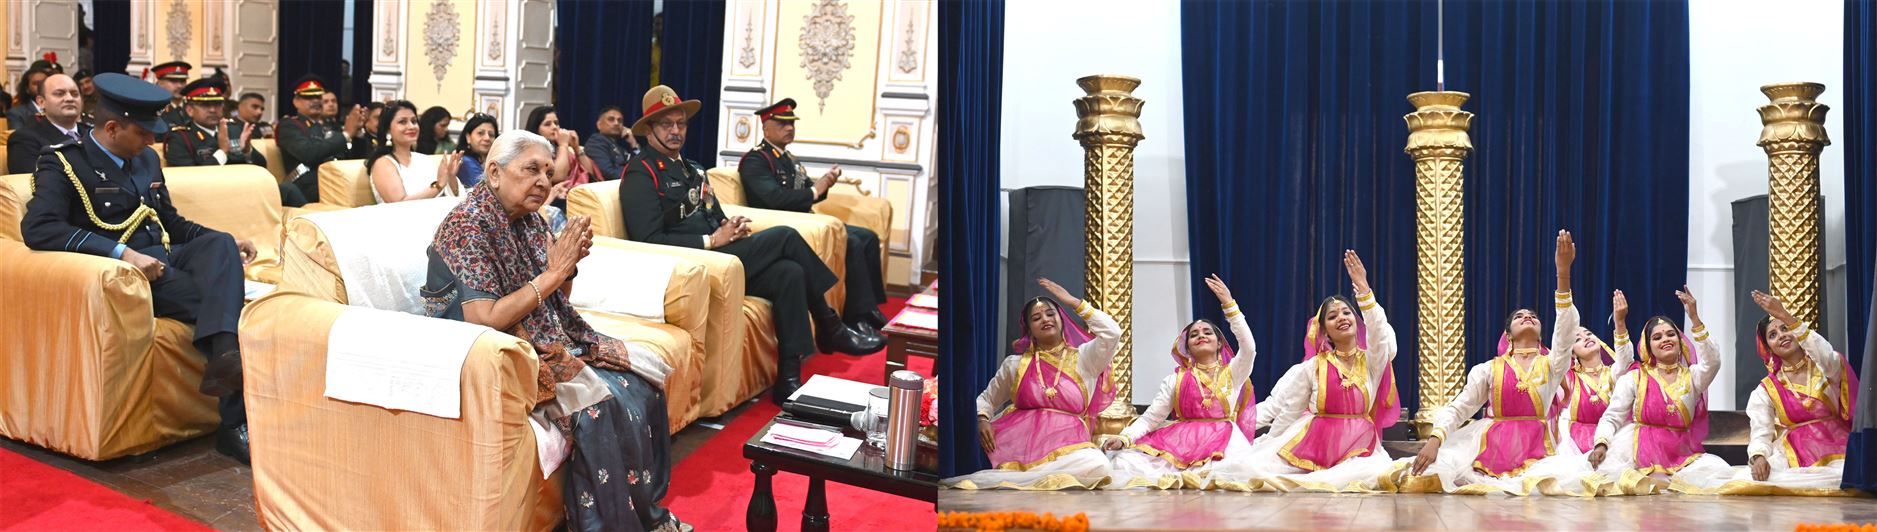 The Governor felicitated NCC cadets who won medals at the Republic Day felicitation ceremony in Delhi. /राज्यपाल ने गणतंत्र दिवस सम्मान समारोह दिल्ली में पदक जीतने वाले एन0सी0सी0 कैडेटों को सम्मानित किया